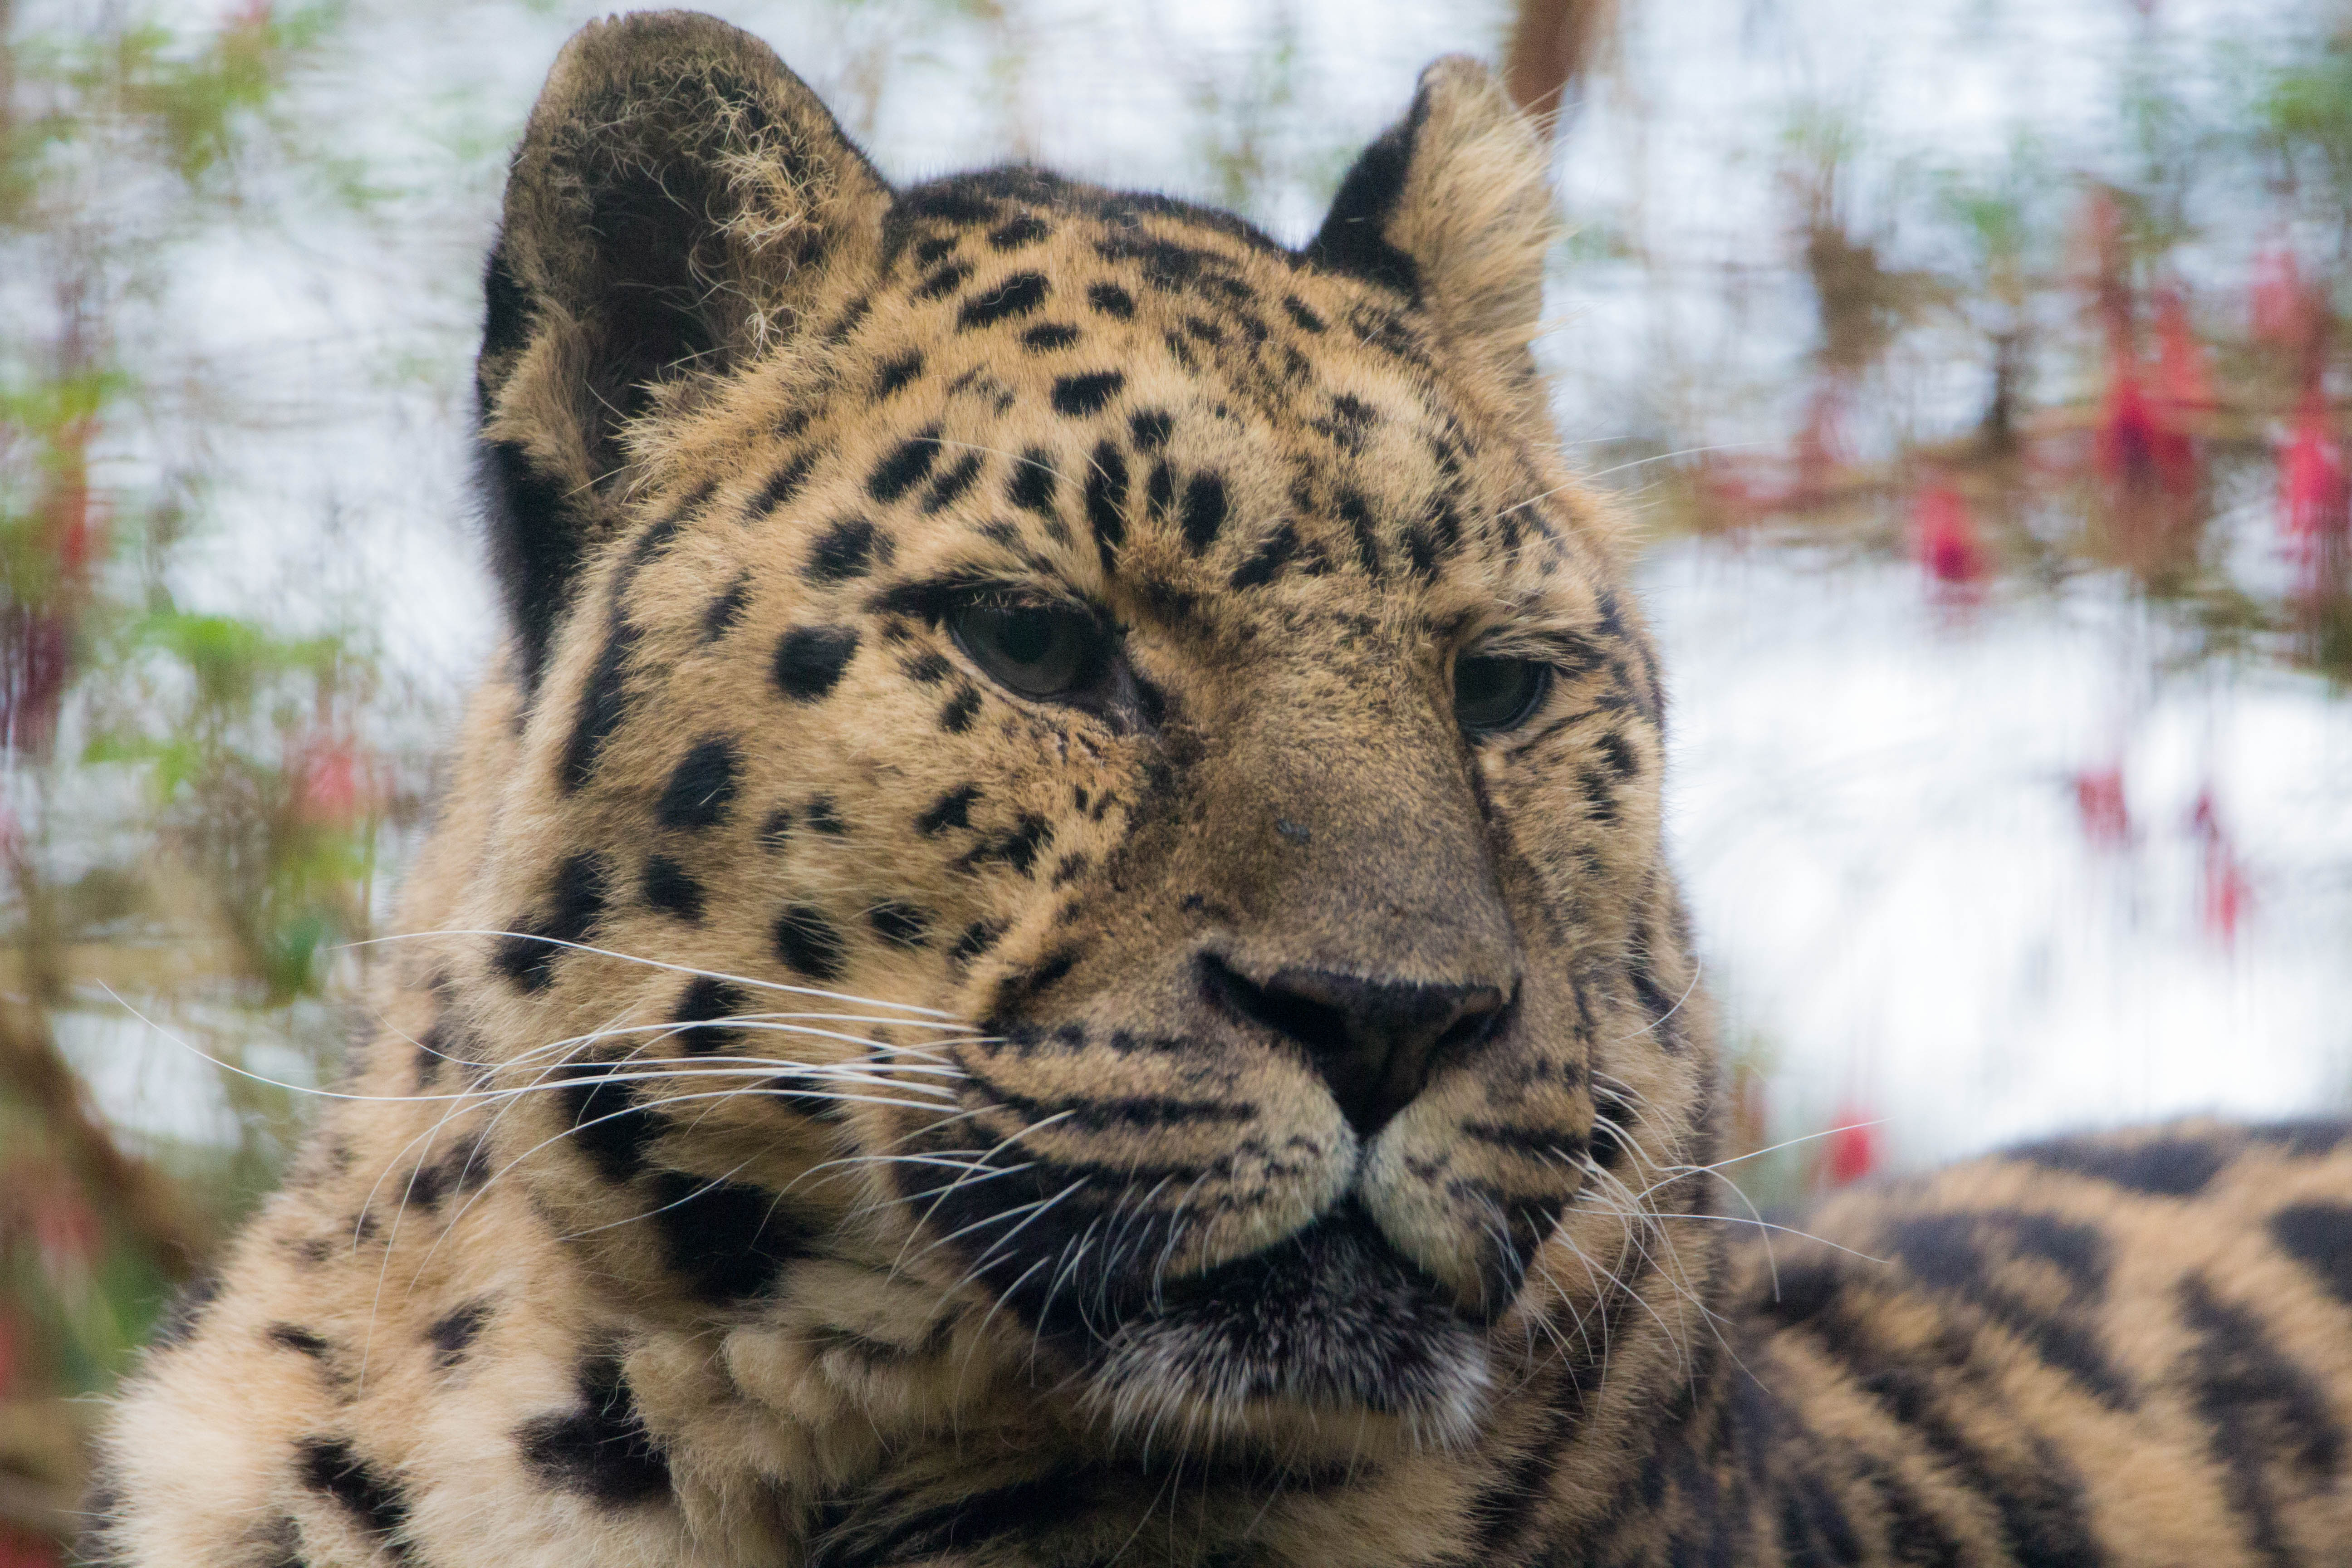 Amur leopard Sergi at Emerald Park